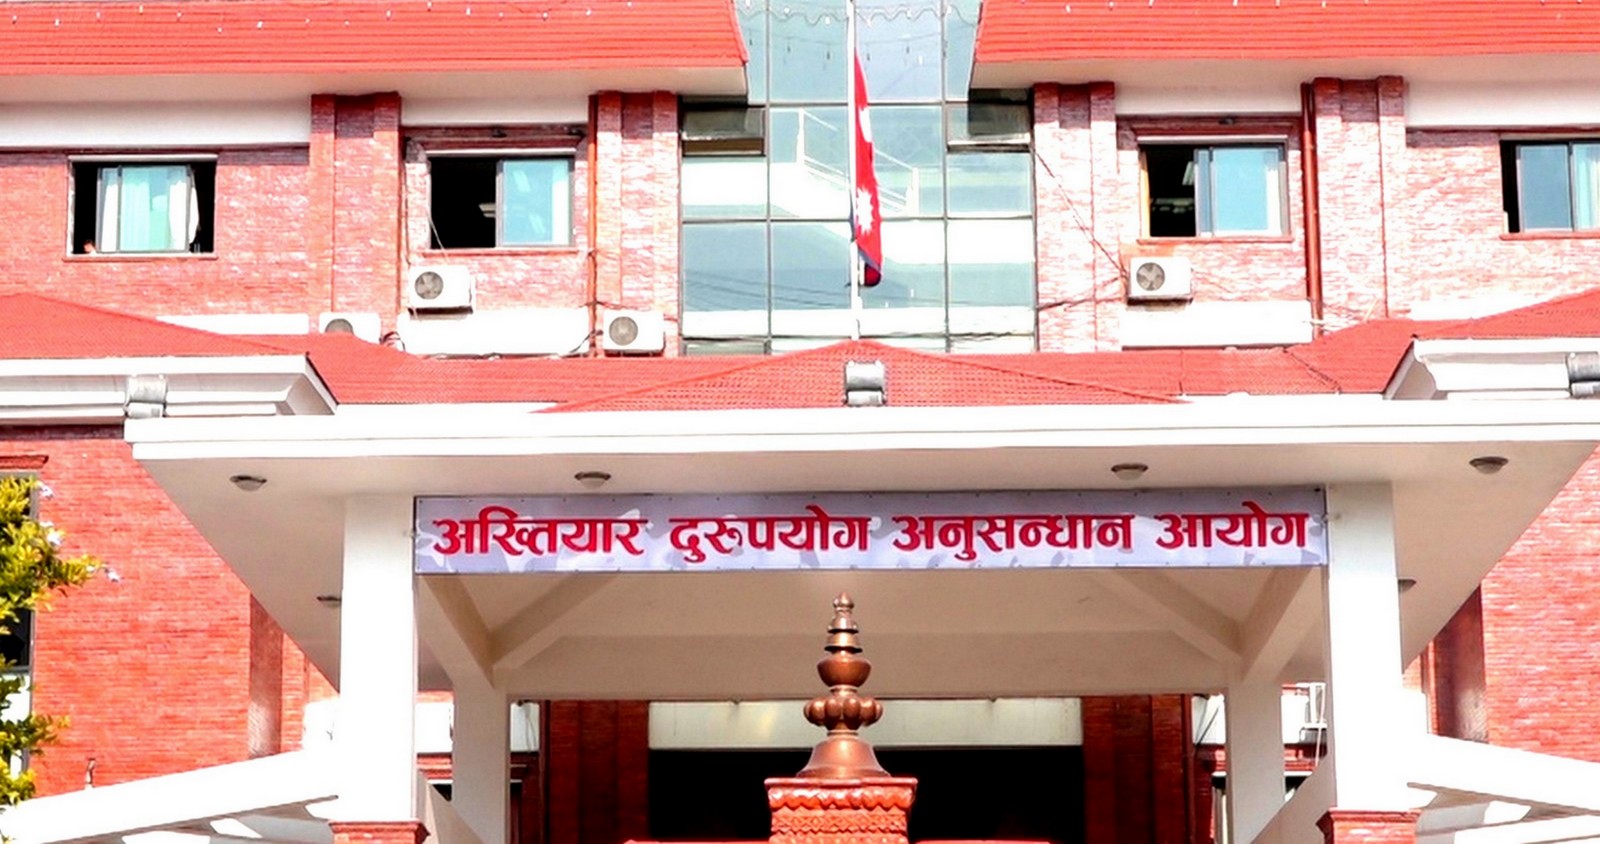 नेपाल दूरसञ्चार प्राधिकरणका पूर्वअध्यक्ष खनाल सहित २० जनाविरुद्ध भ्रष्टाचार मुद्दा दायर